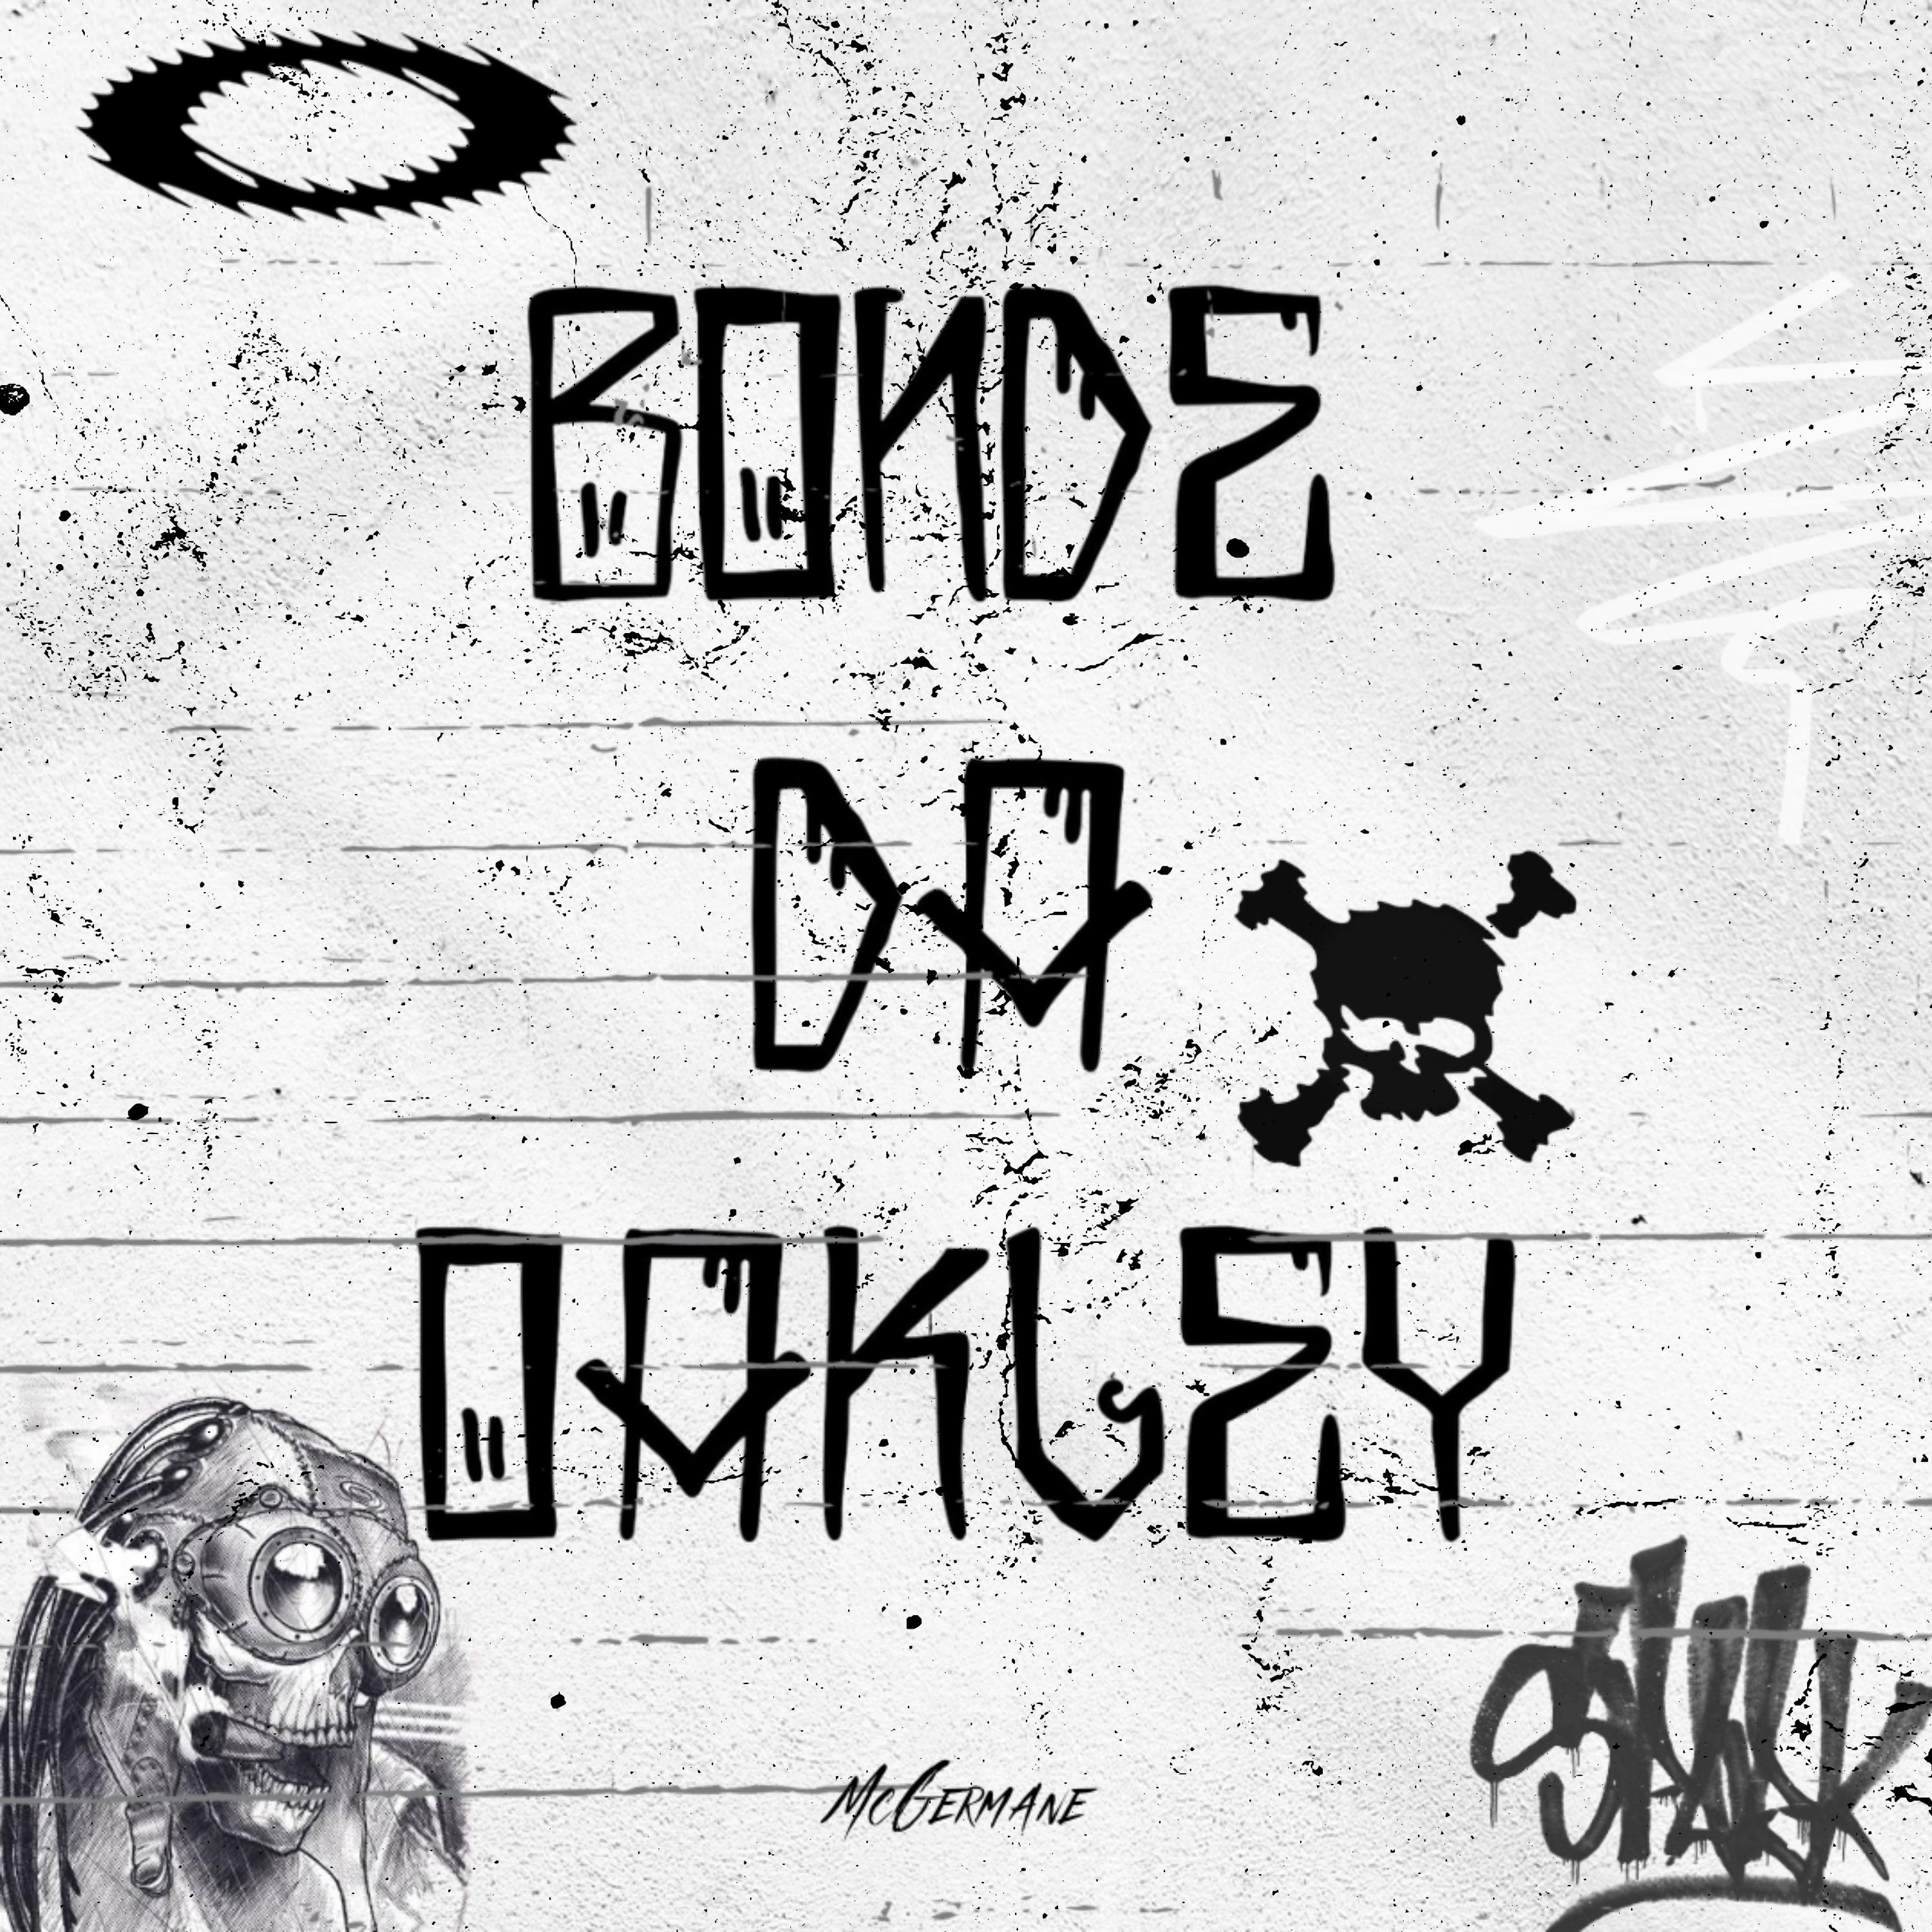 Постер альбома Bonde da Oakley